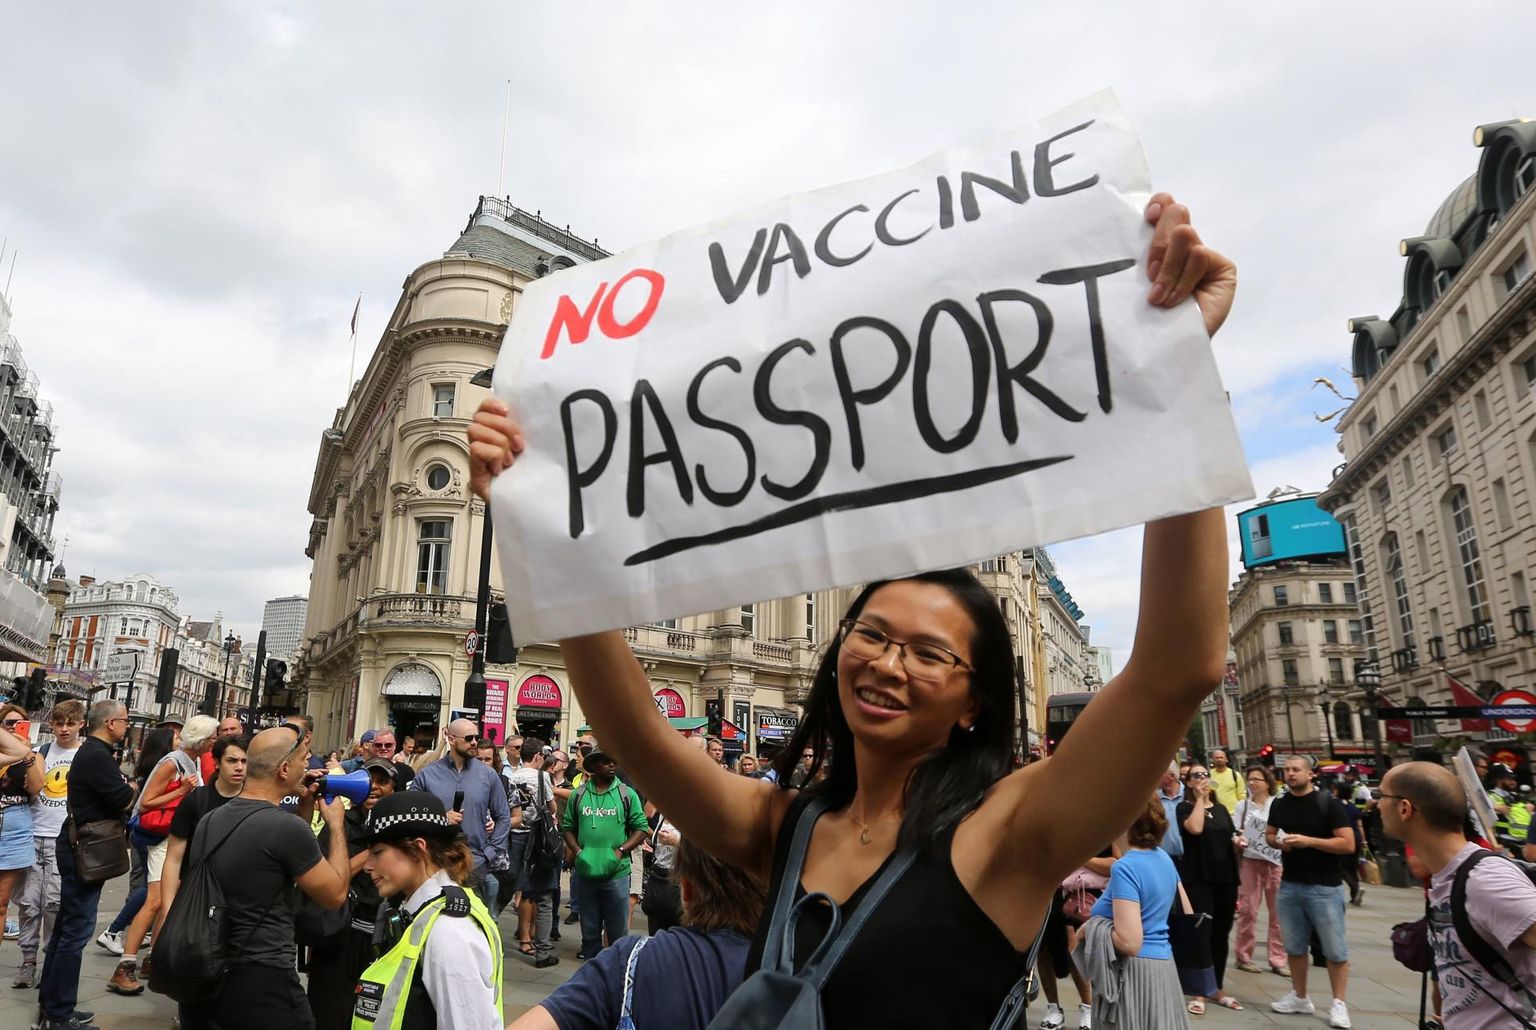 Vaktsiinipassi vastane meeleavaldus Londonis.